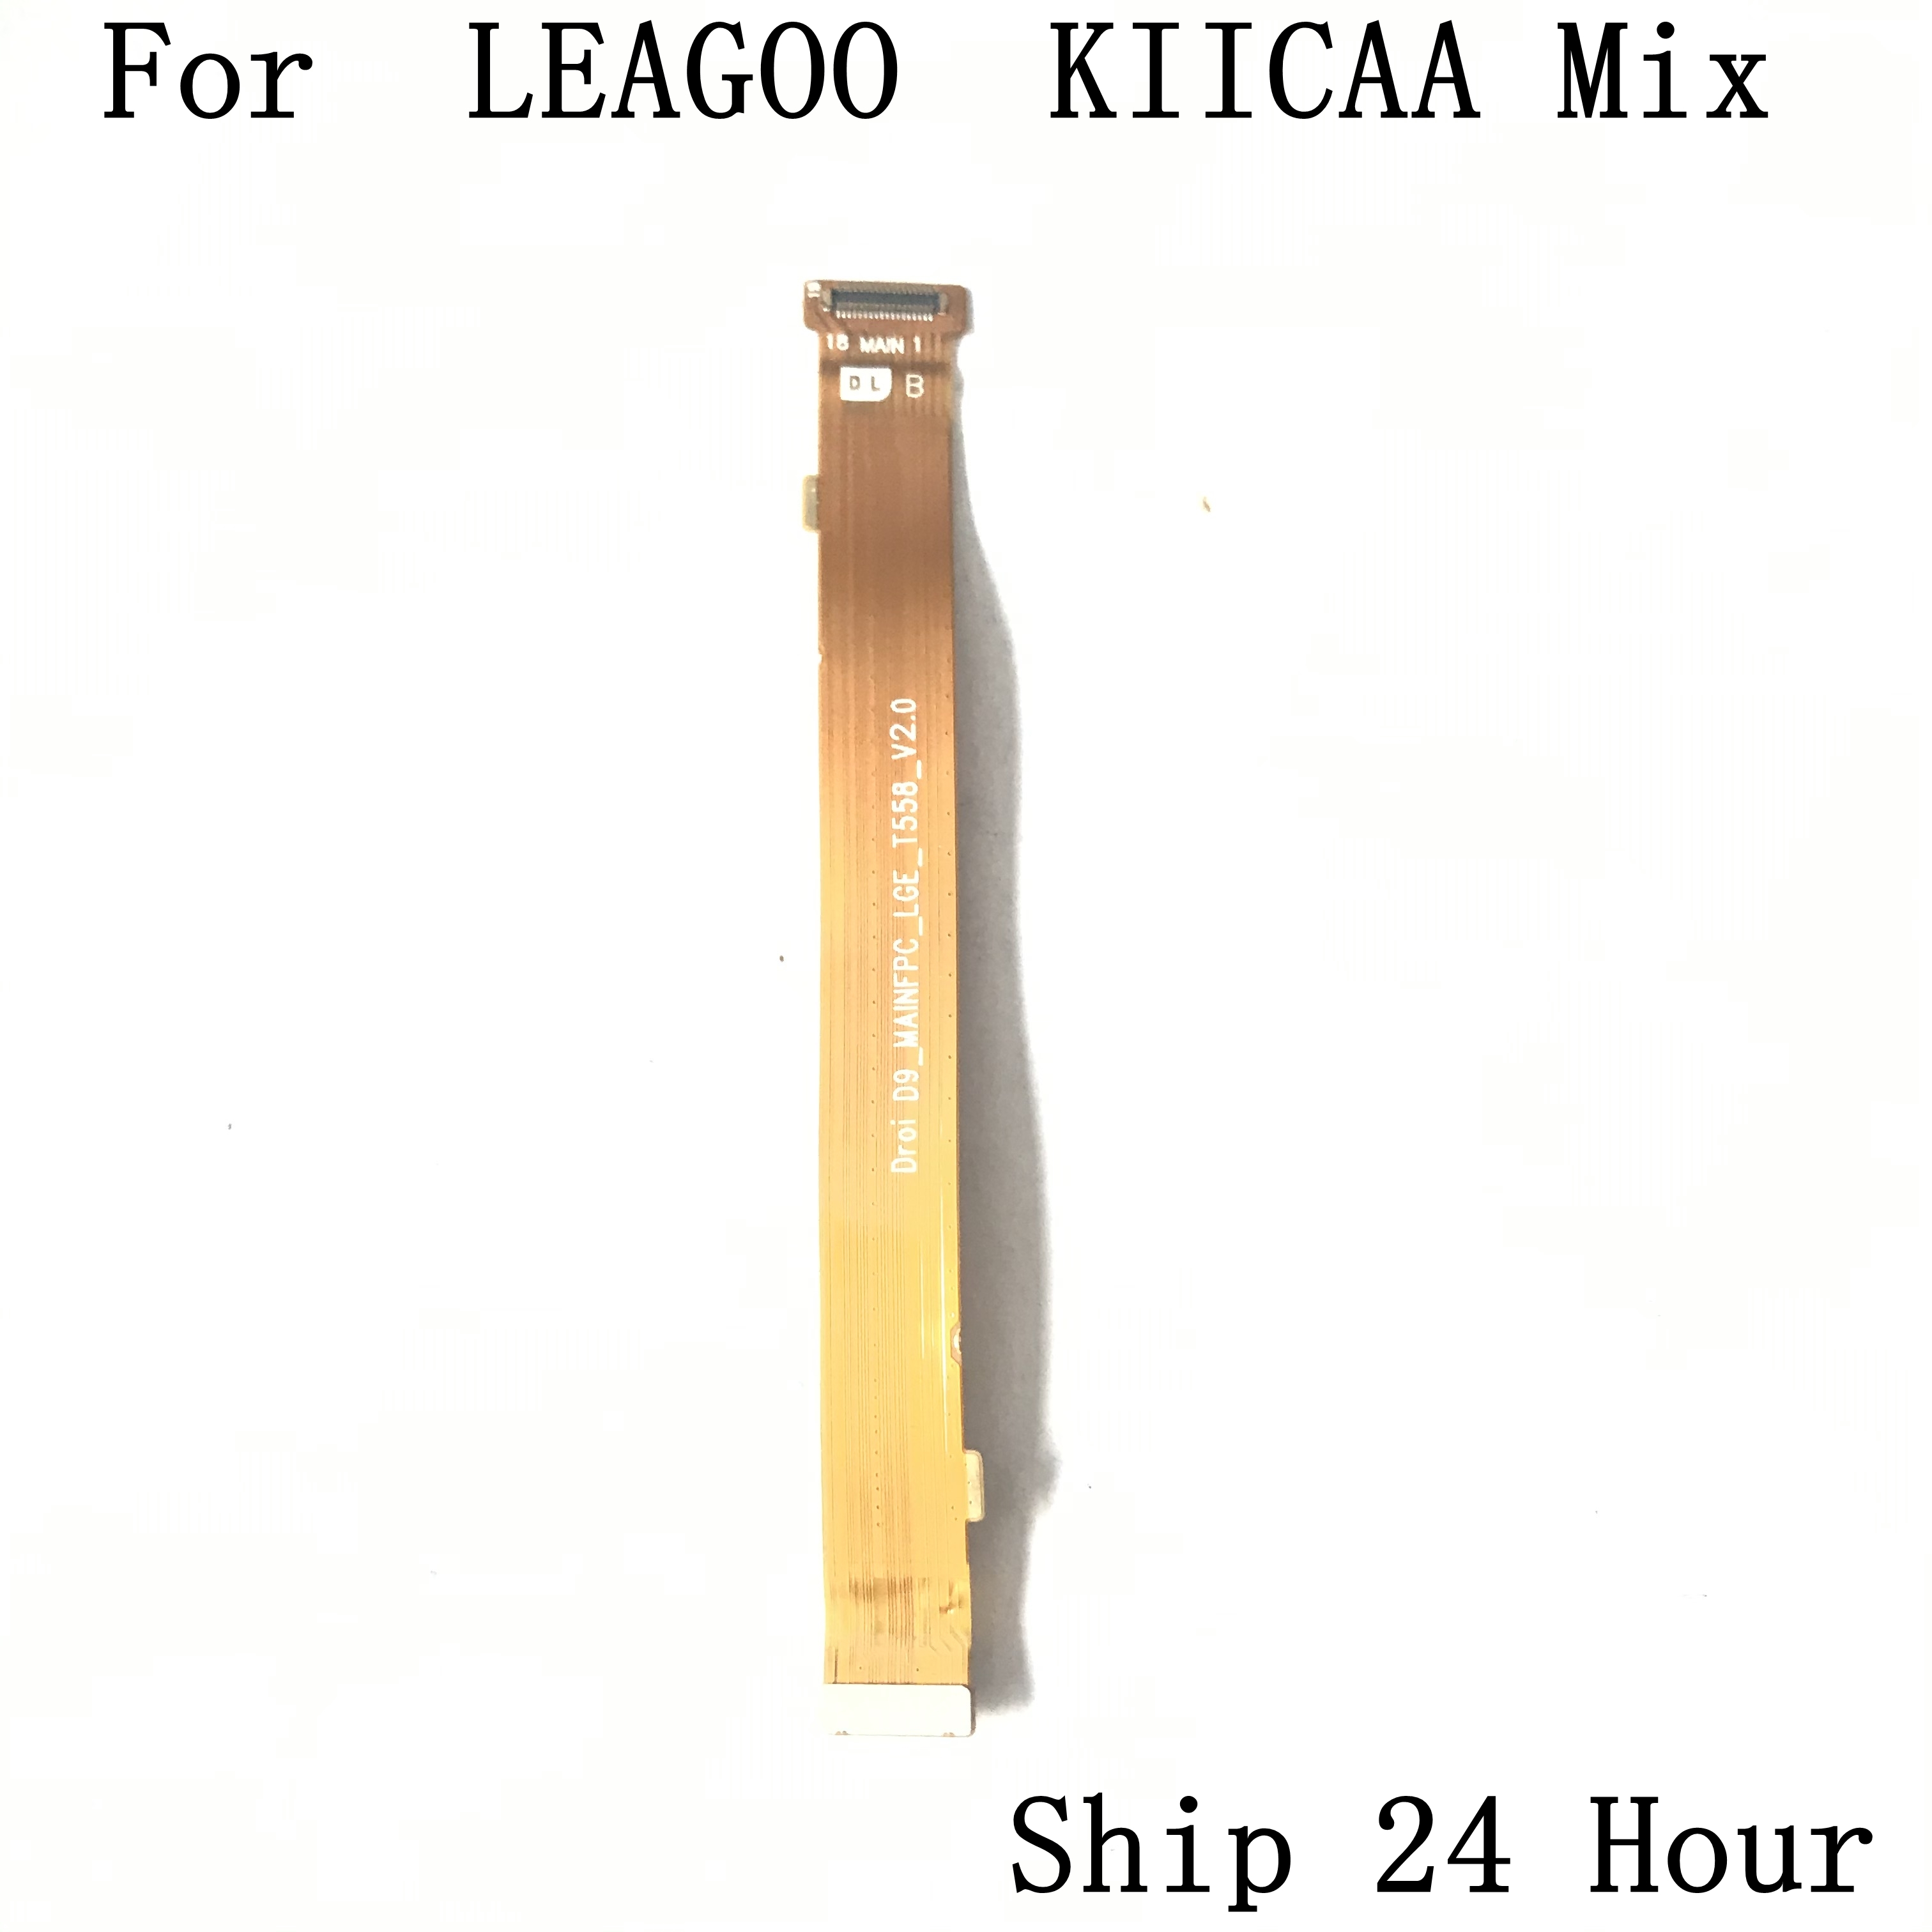 LEAGOO KIICAA Mix Used USB Charge Board to Motherboard FPC For LEAGOO KIICAA Mix Repair Fixing Part Replacement